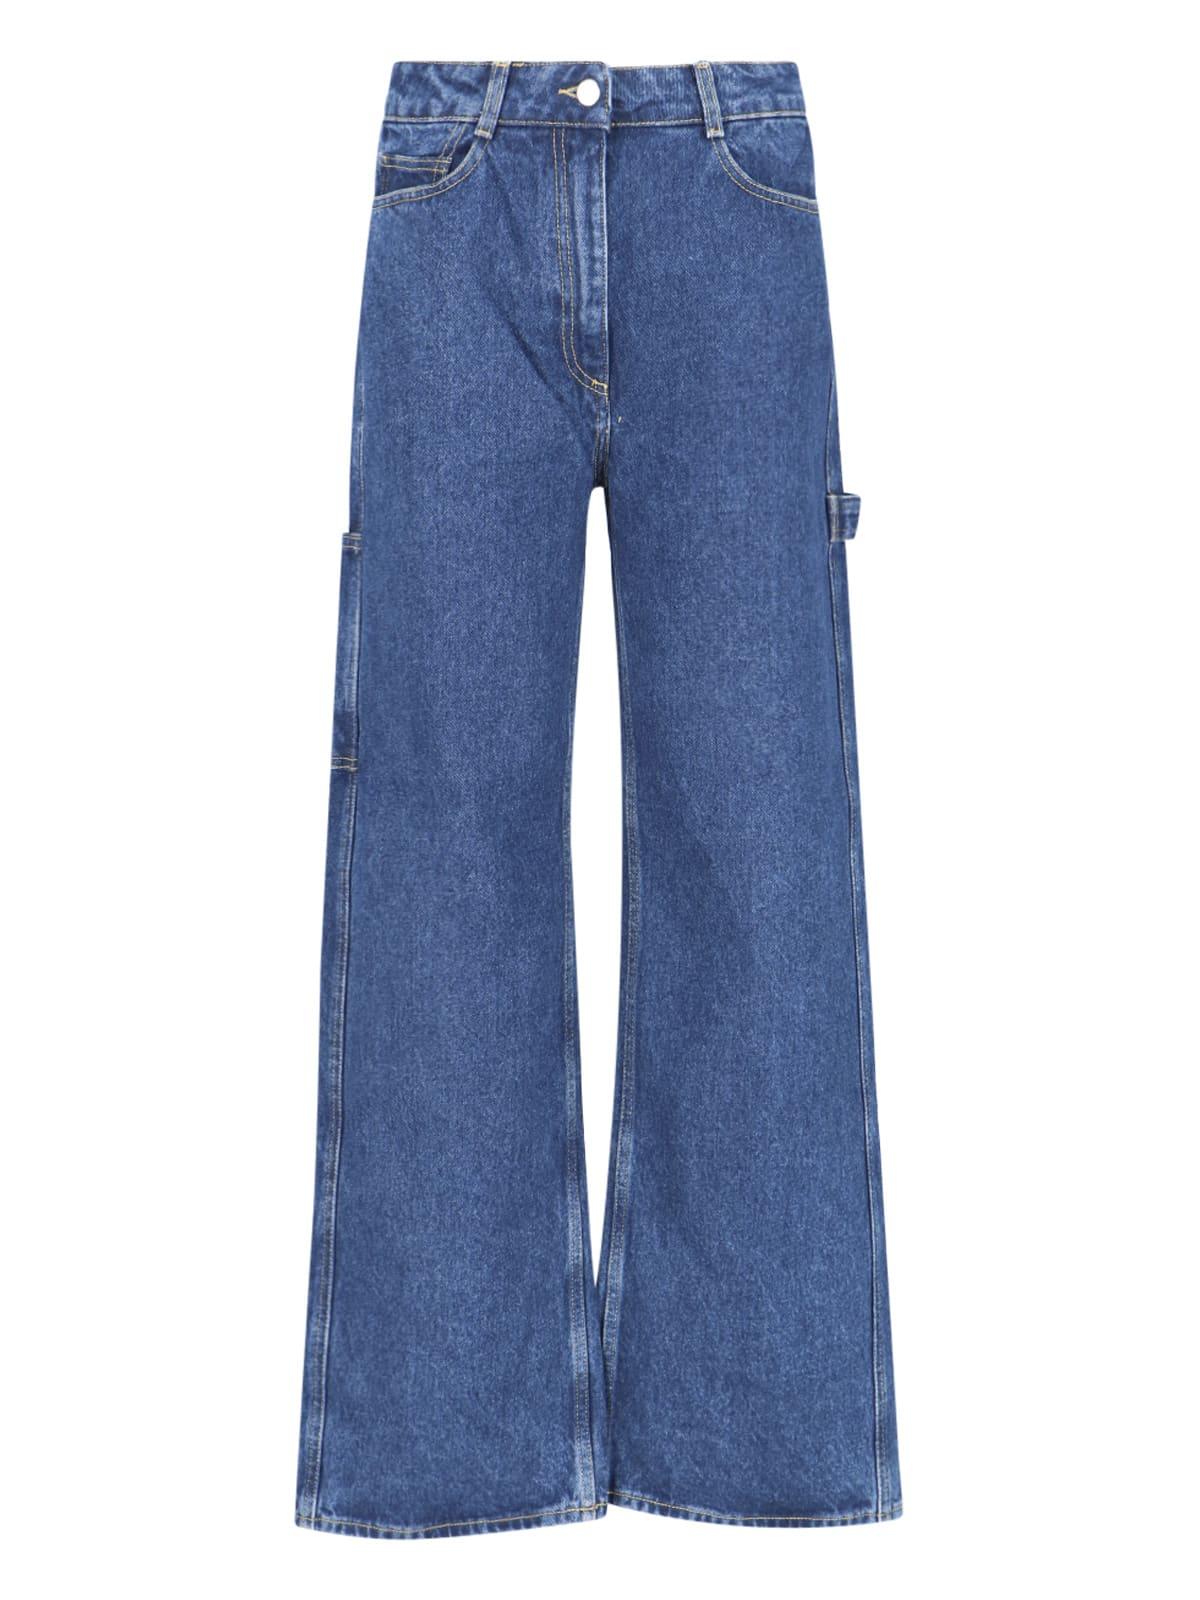 Saks Jeans in Blue Lyst